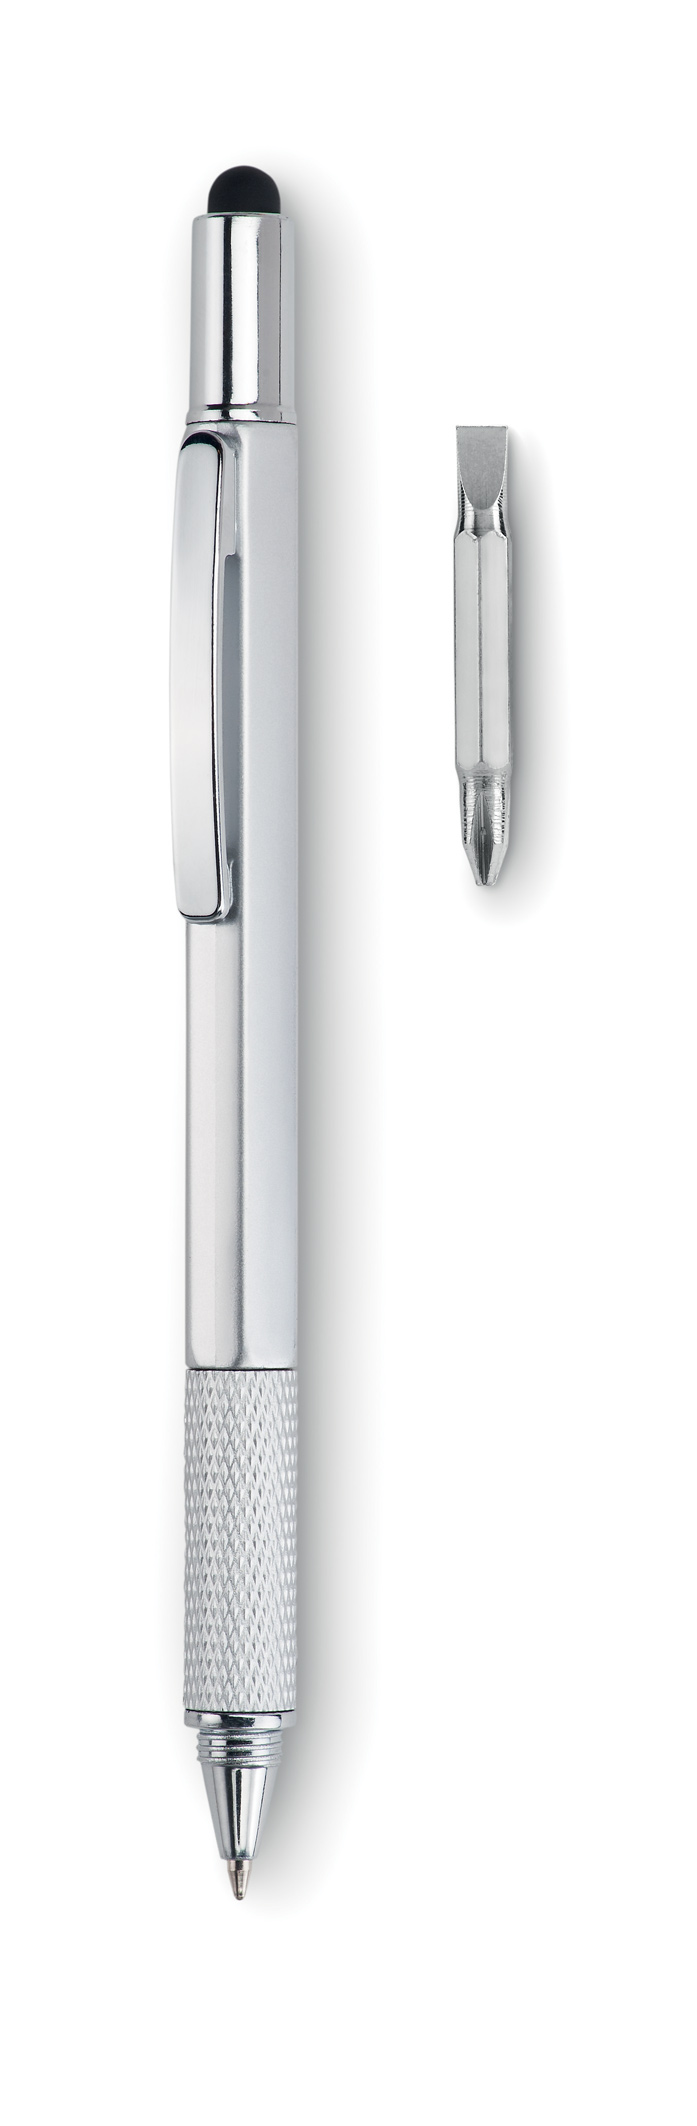 Branded Spirit level pen with ruler